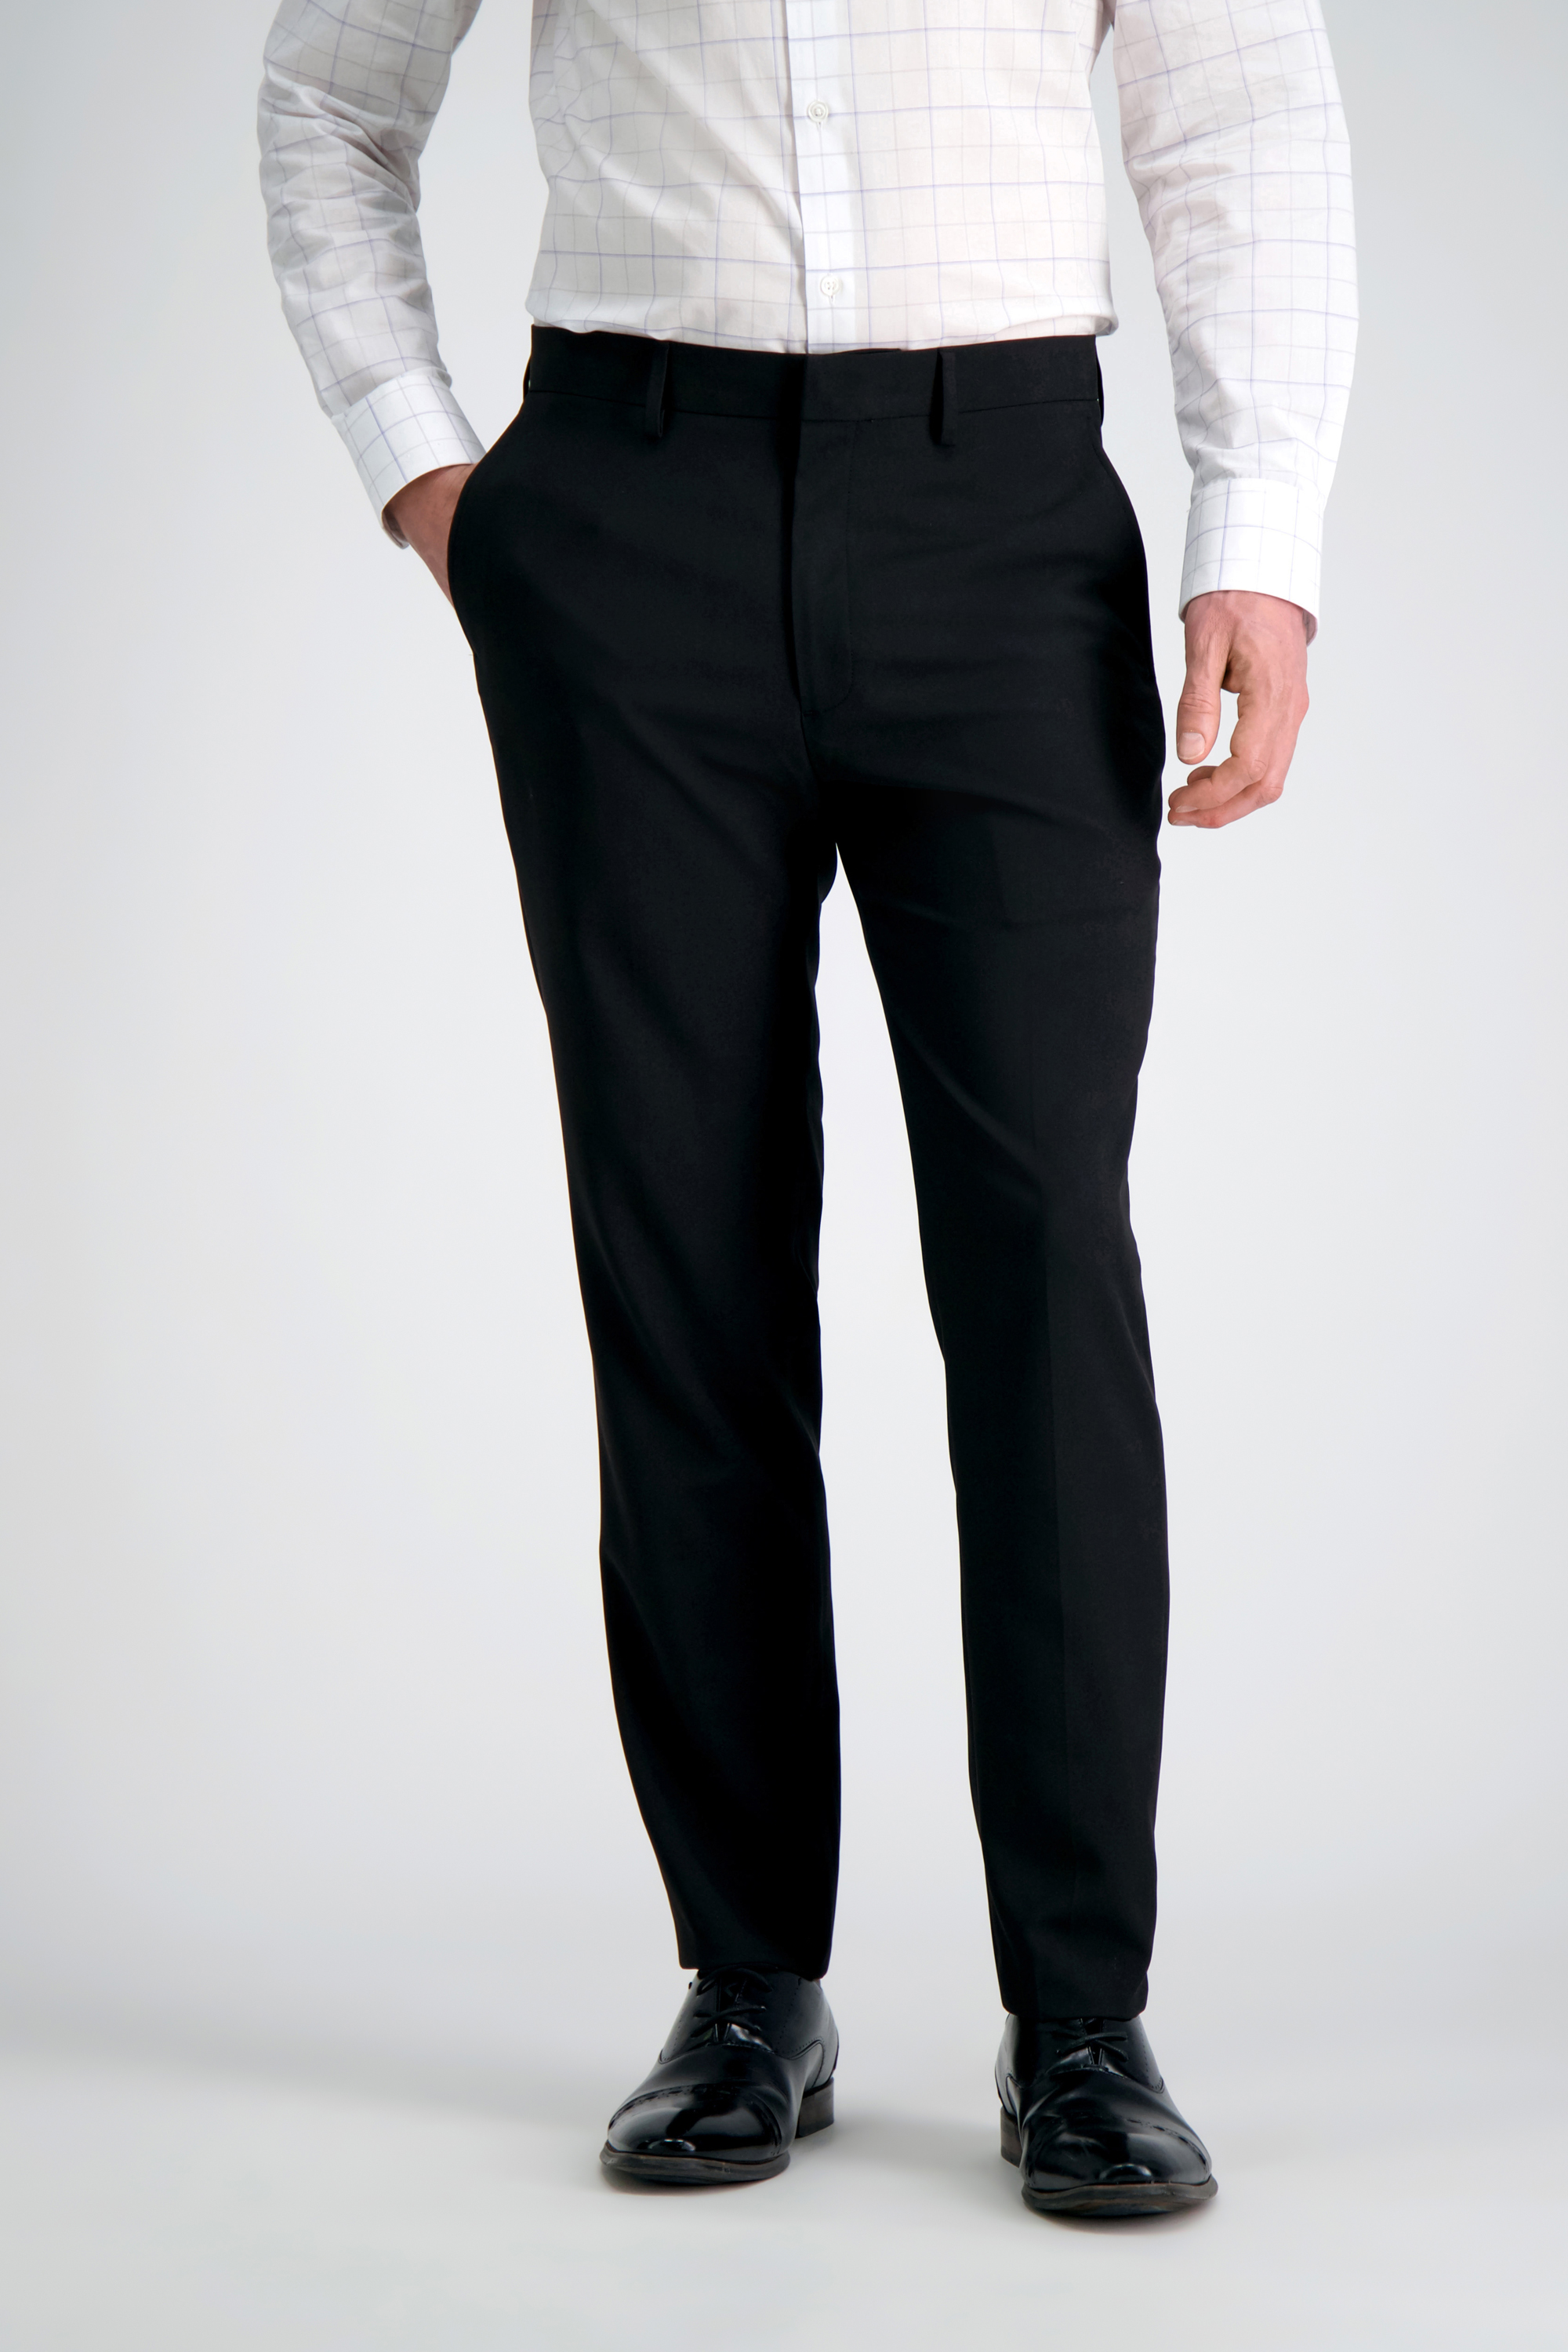 Haggar Men's Smart Wash Repreve Suit Separate Pant Classic Fit 